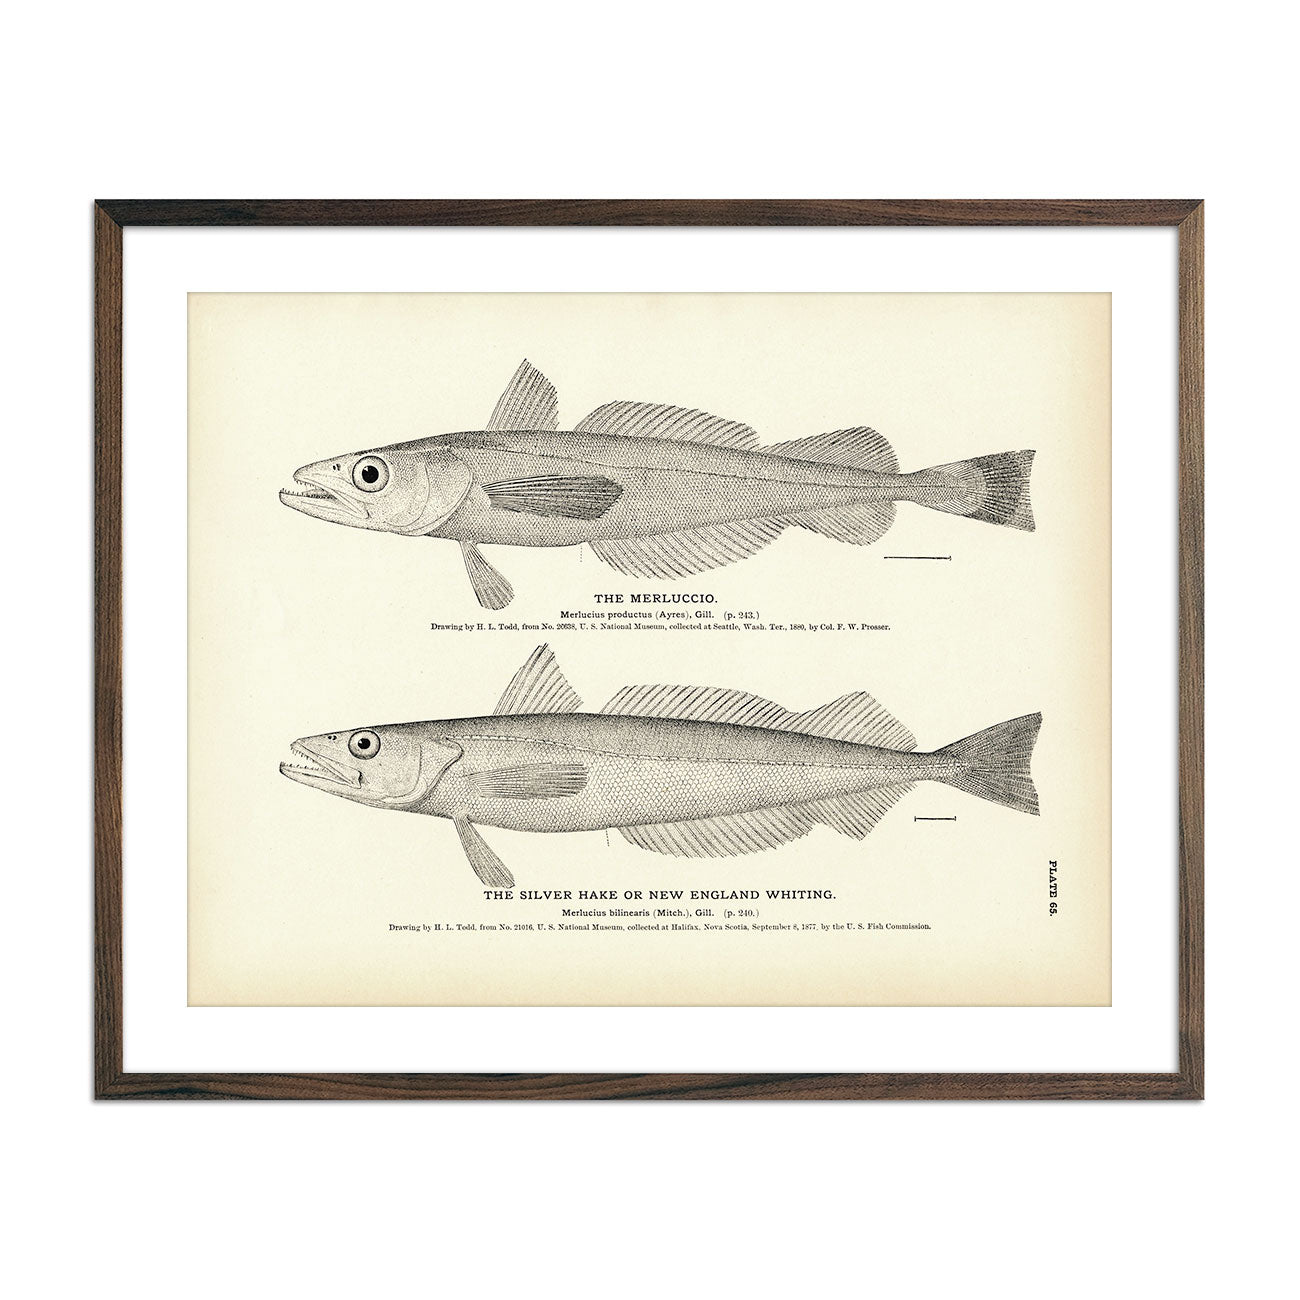 Vintage Merluccio and Silver Hake fish print